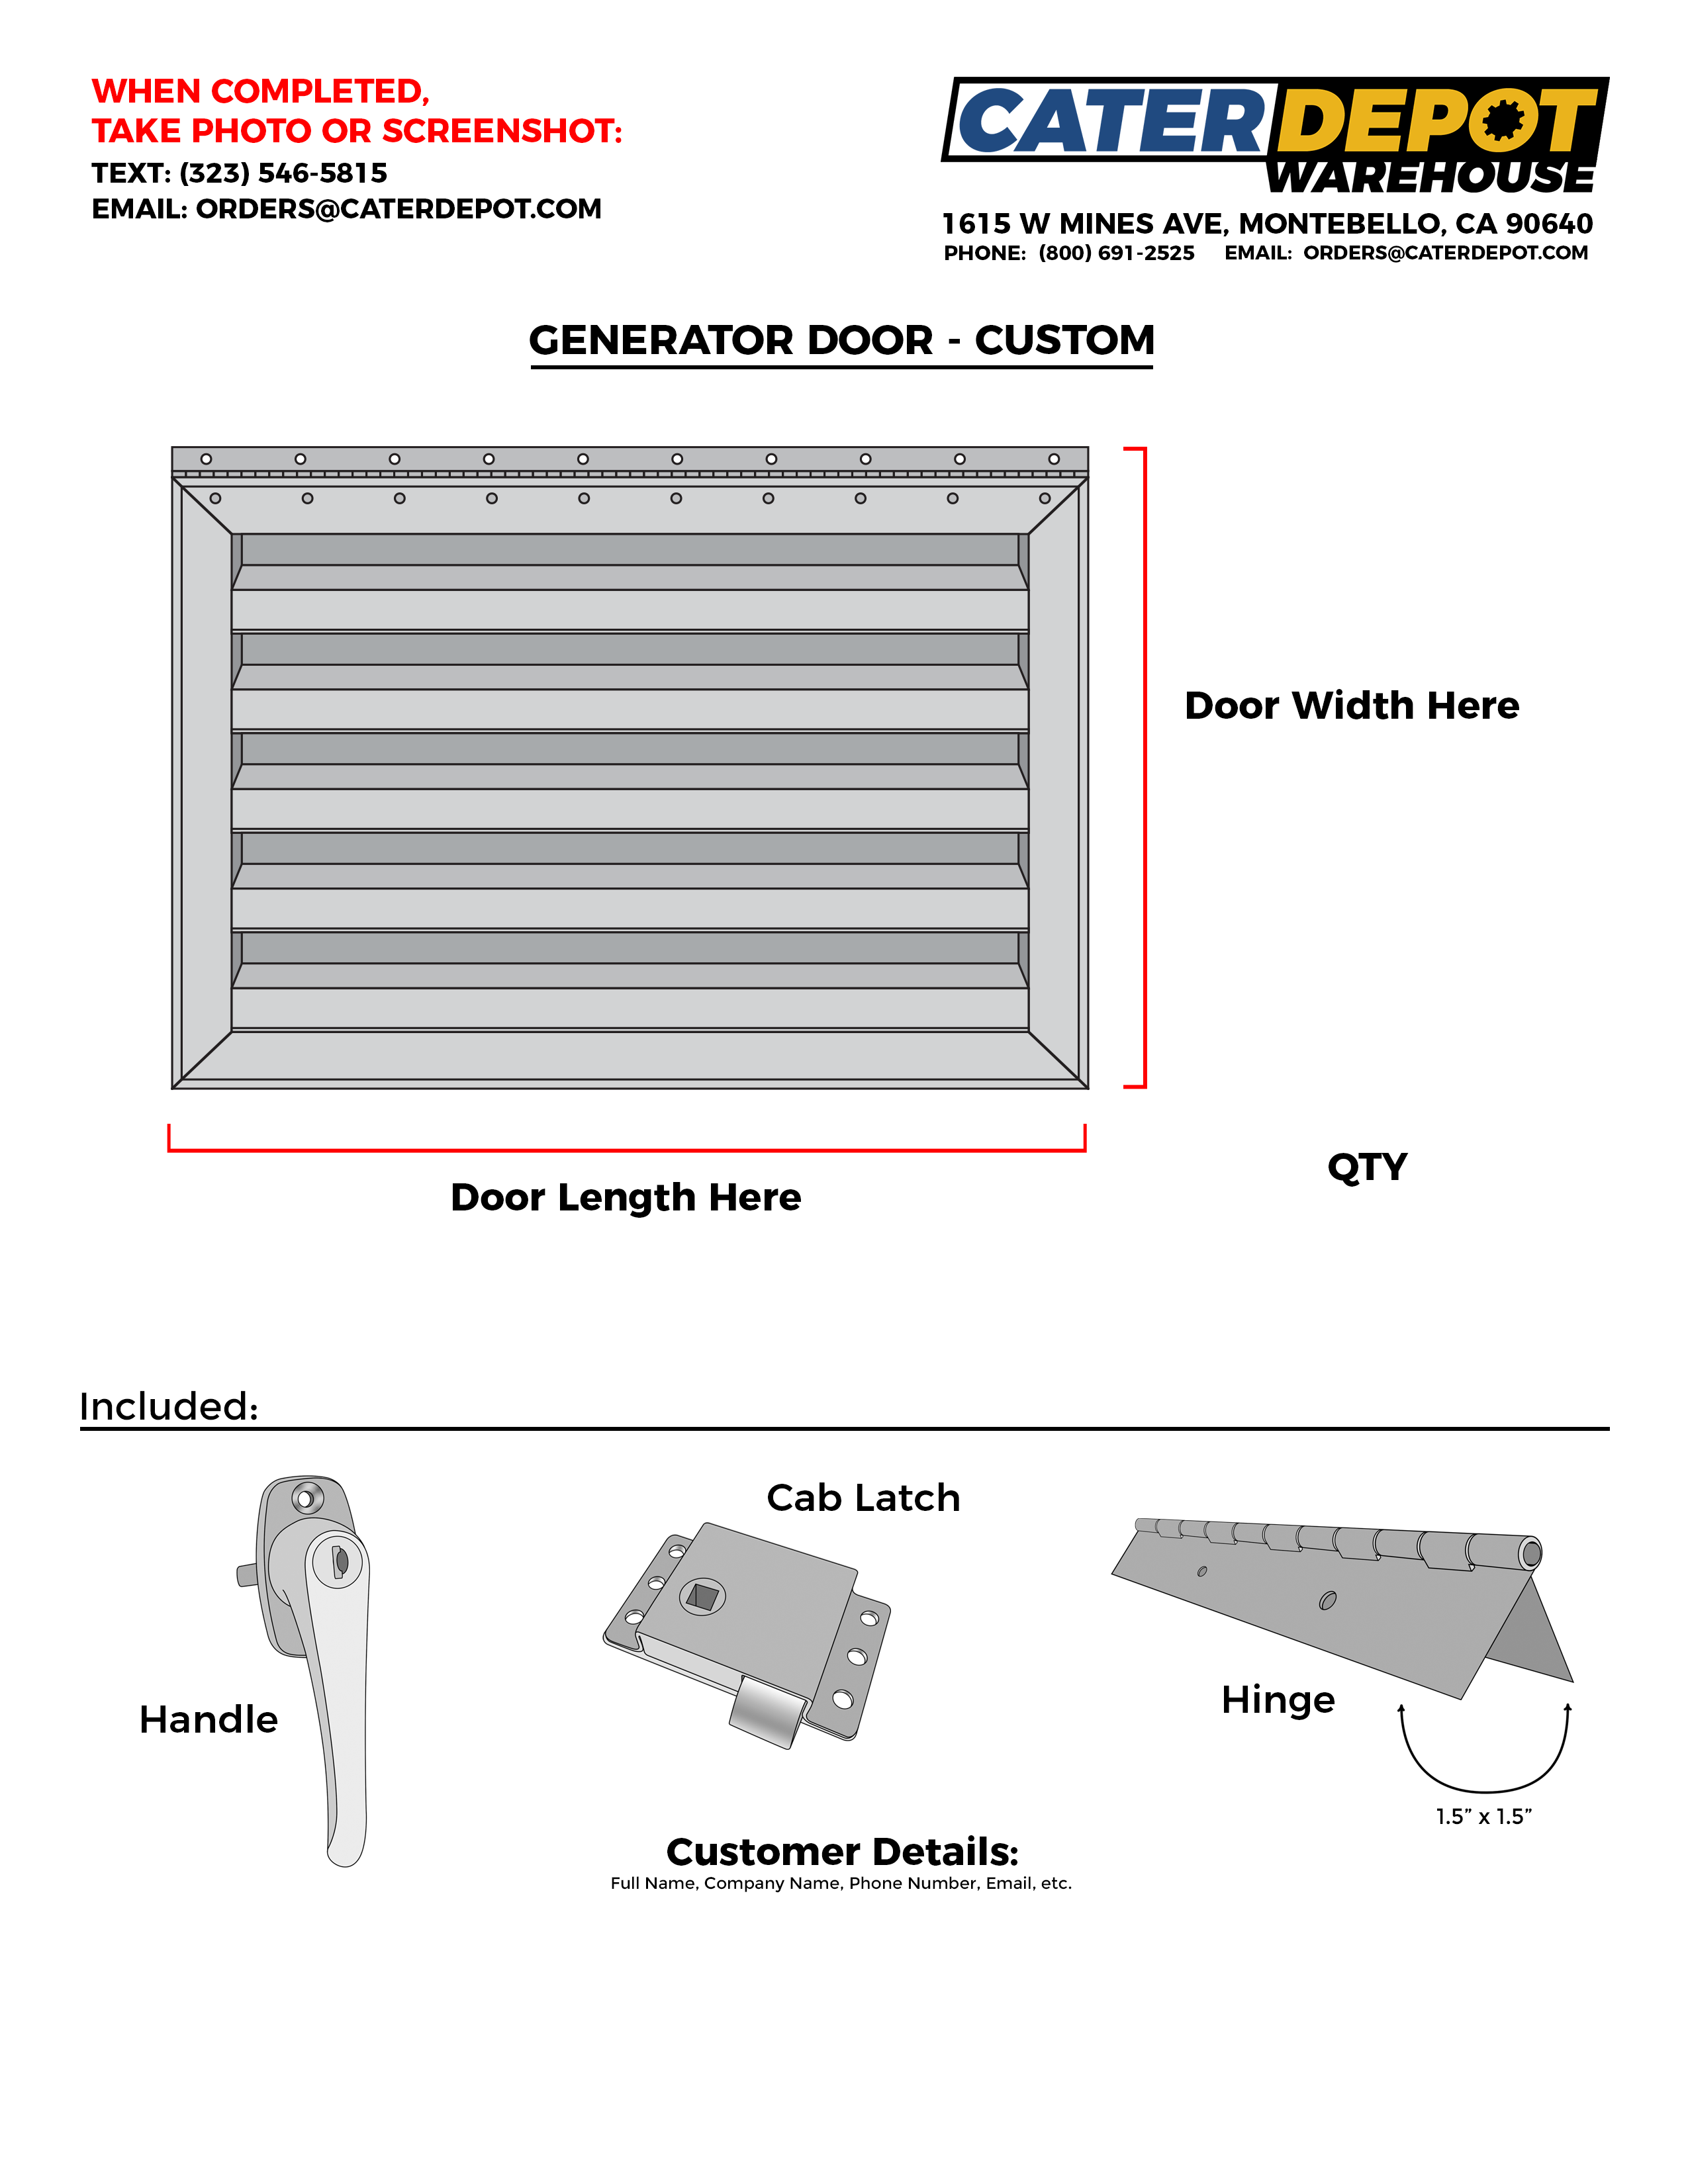 Custom Generator Door